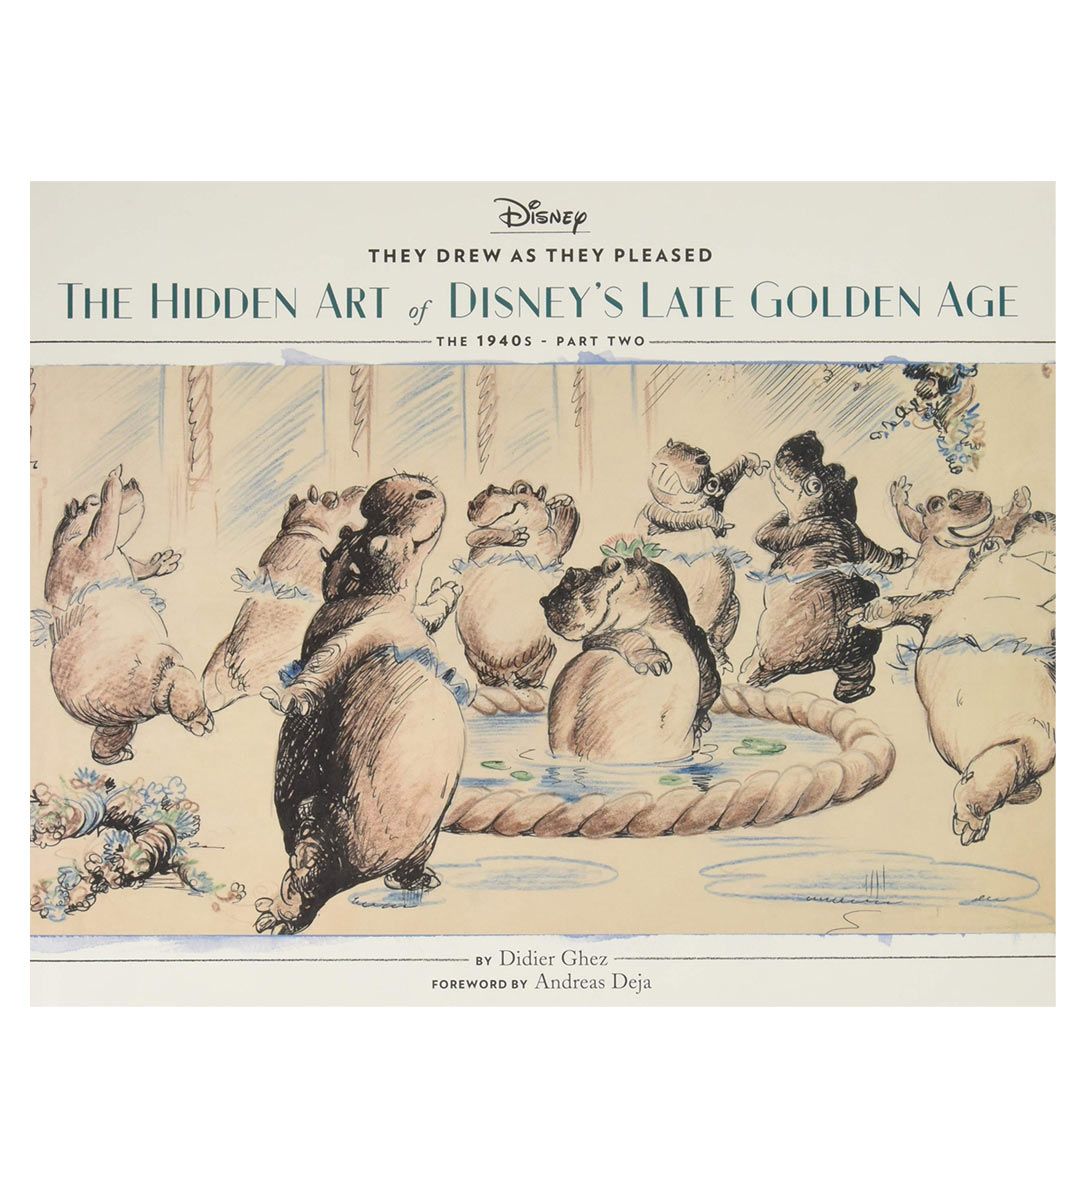 El arte oculto de la edad de oro tardía de Disney: la parte segunda de la década de 1940